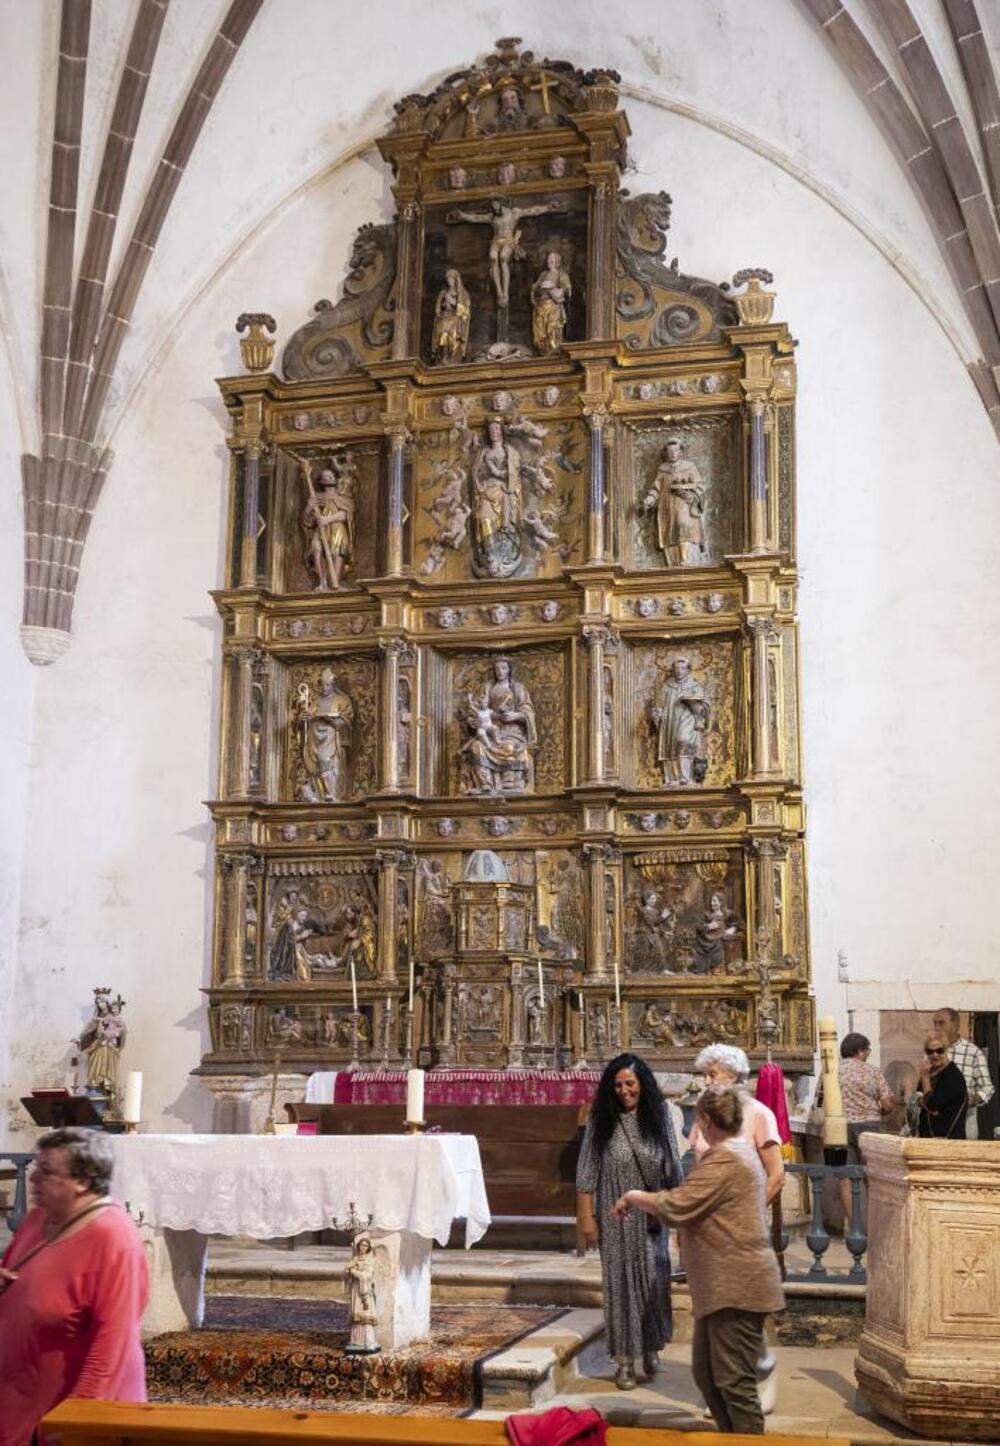 Vista general del retablo, obra de mediados del siglo XVI, cuyo estado general es bueno, aunque algunos elementos corren riesgo de desaparecer.